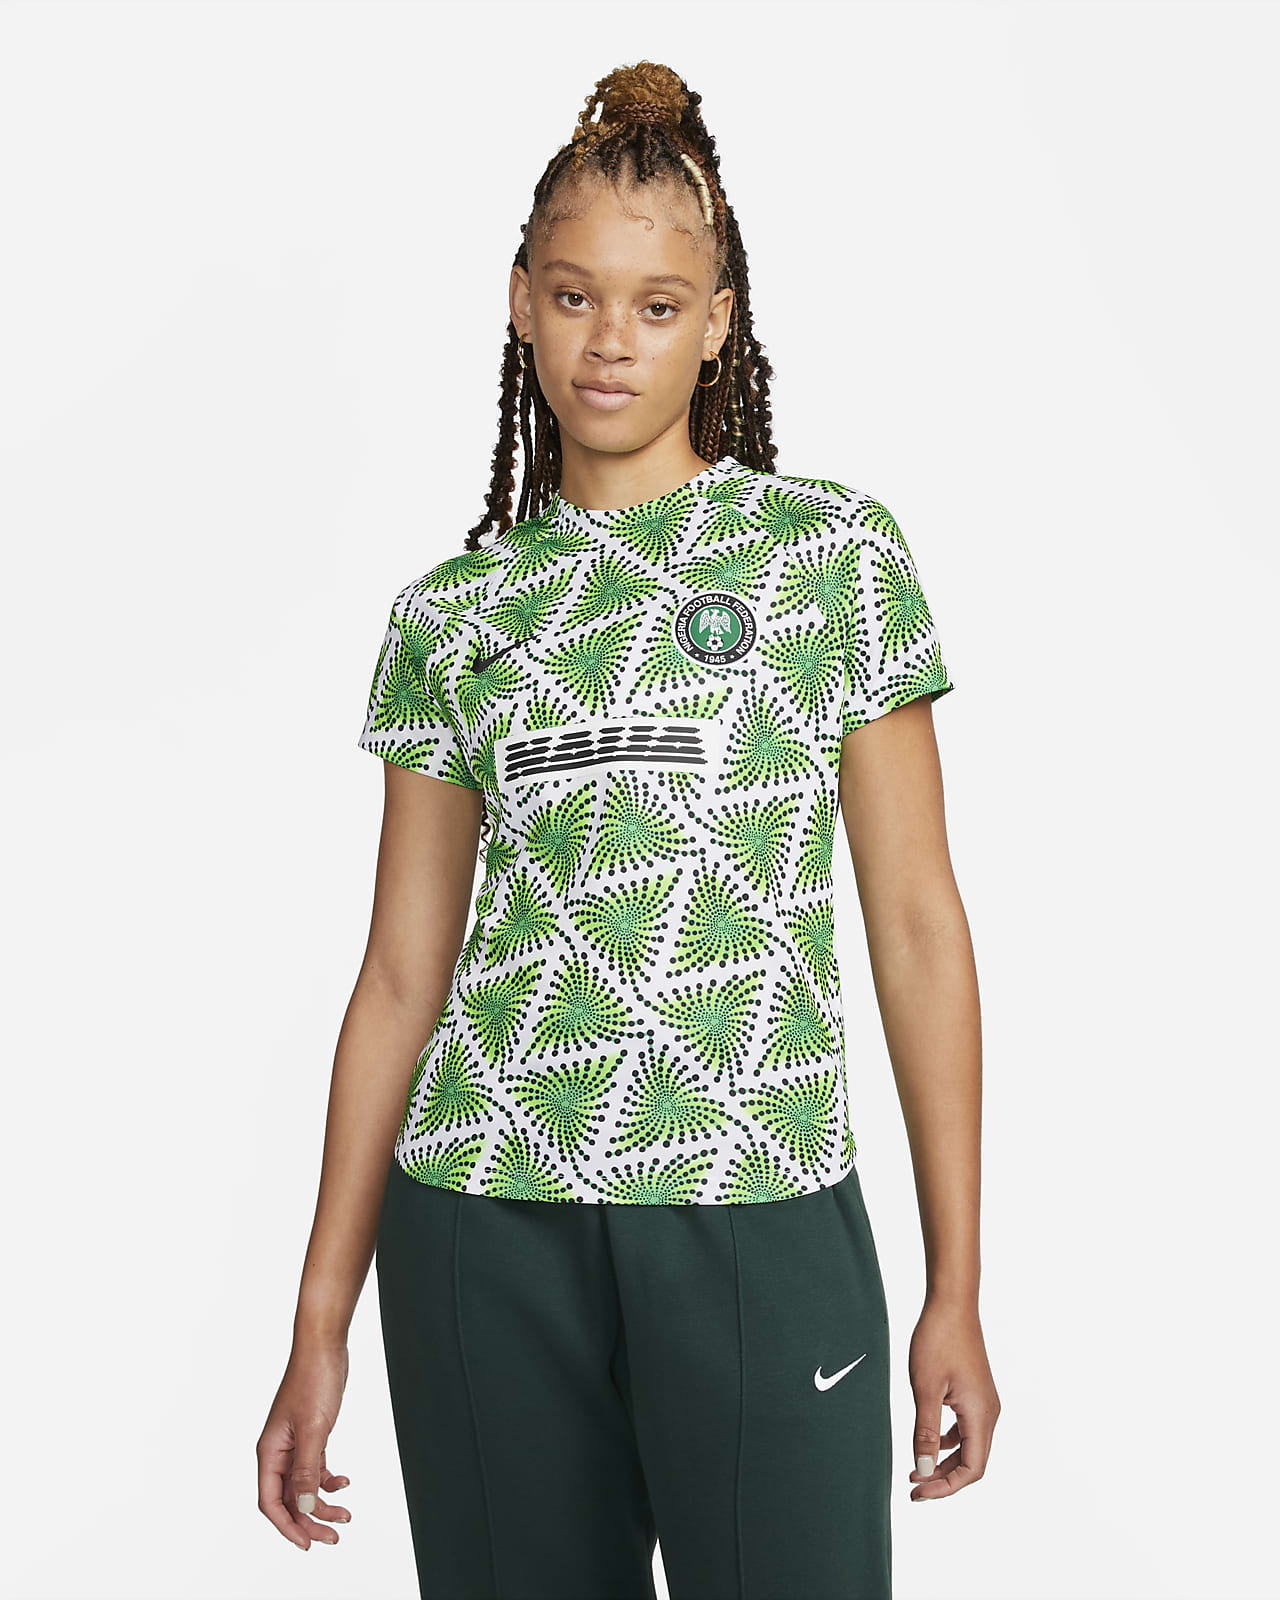 móvil Dedicar Flotar Playera de fútbol para antes del partido Nike Dri-FIT para mujer de Nigeria.  Nike.com